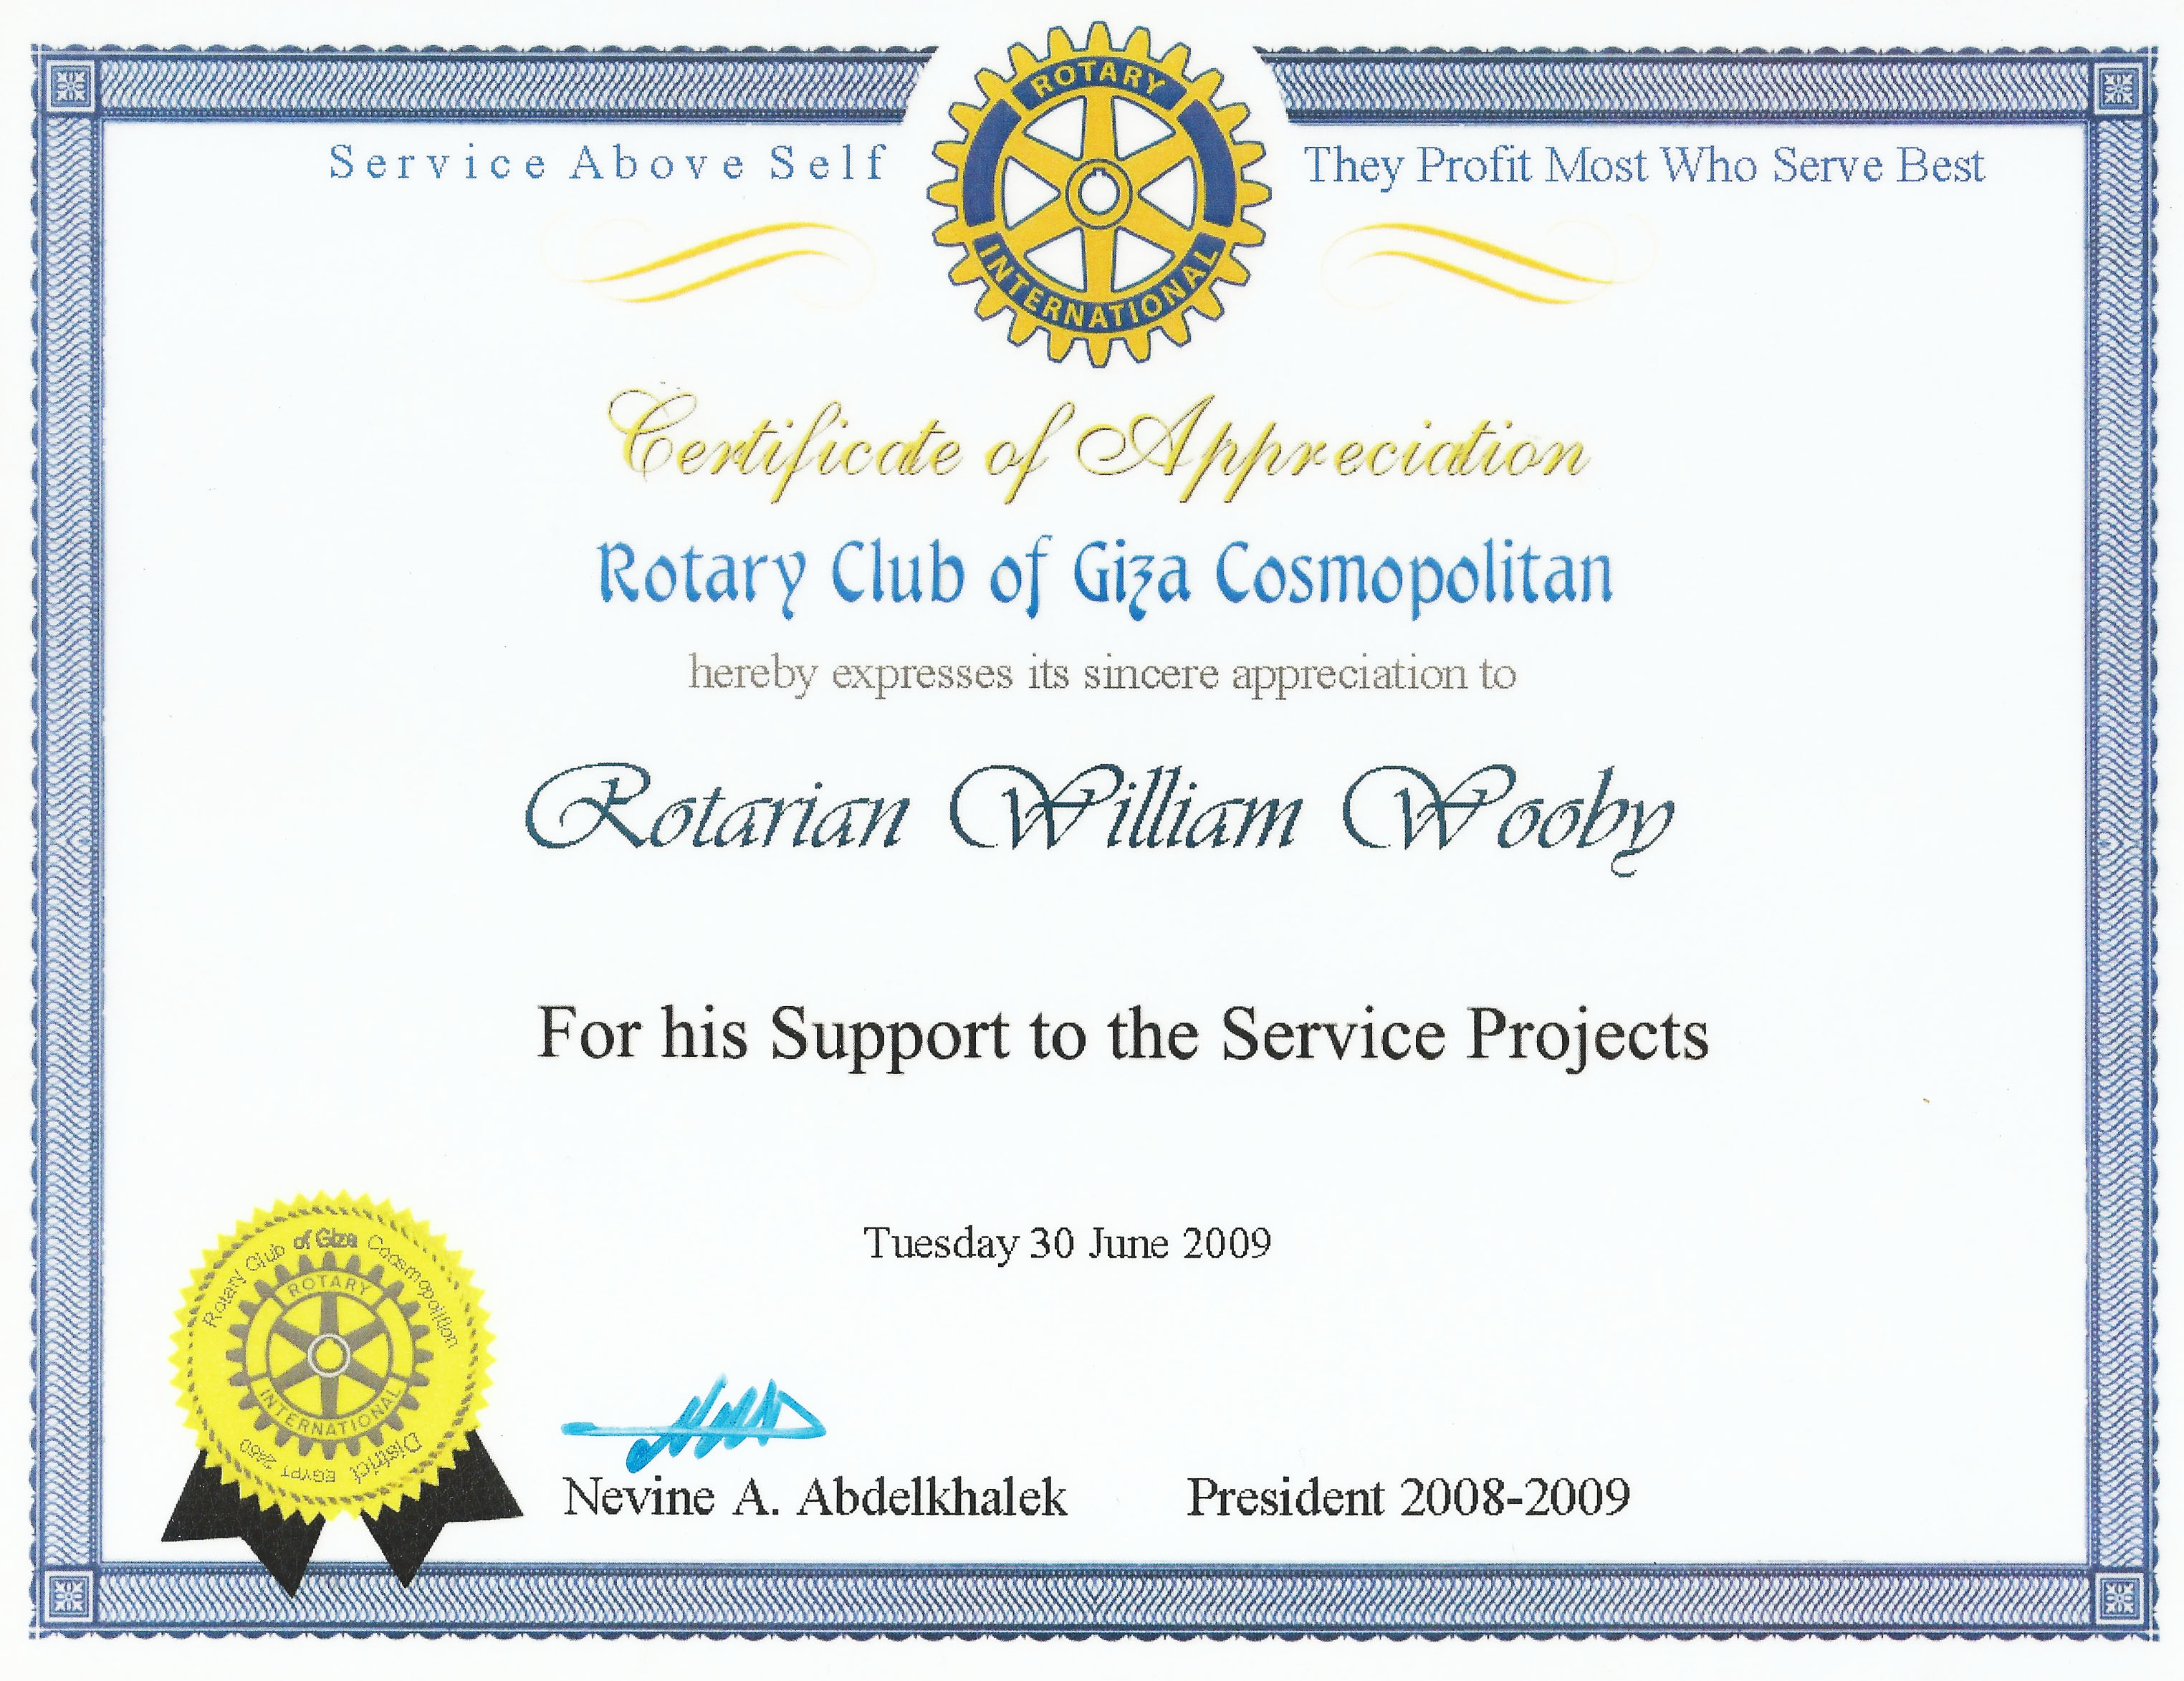 Rotary Award